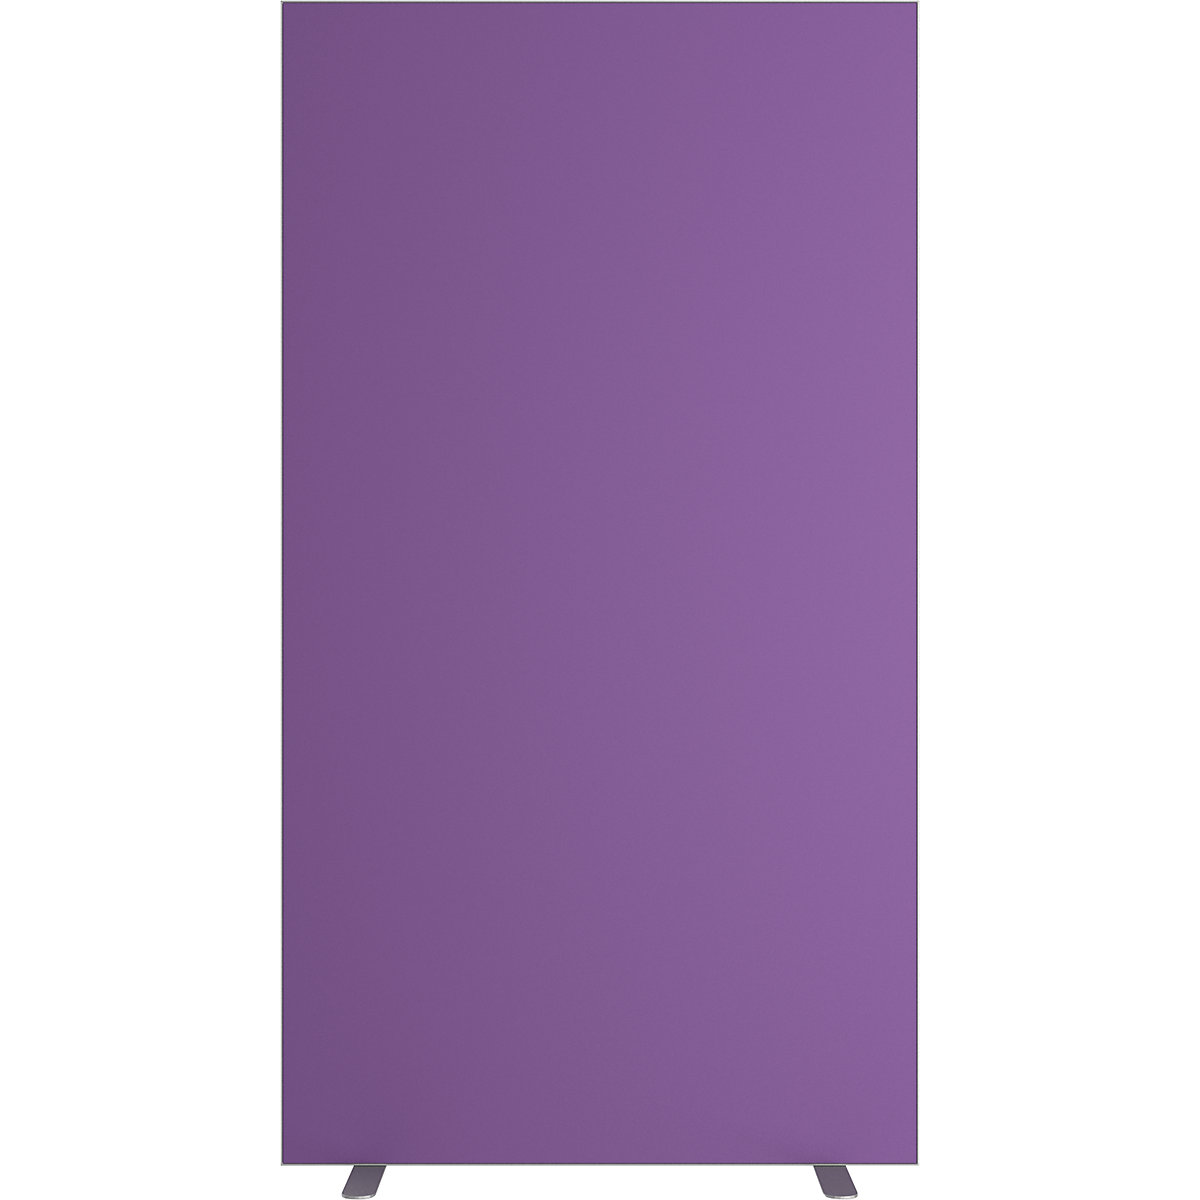 Predelna stena easyScreen, enobarvna izvedba, z zvočno izolacijo, vijoličaste barve, širina 940 mm